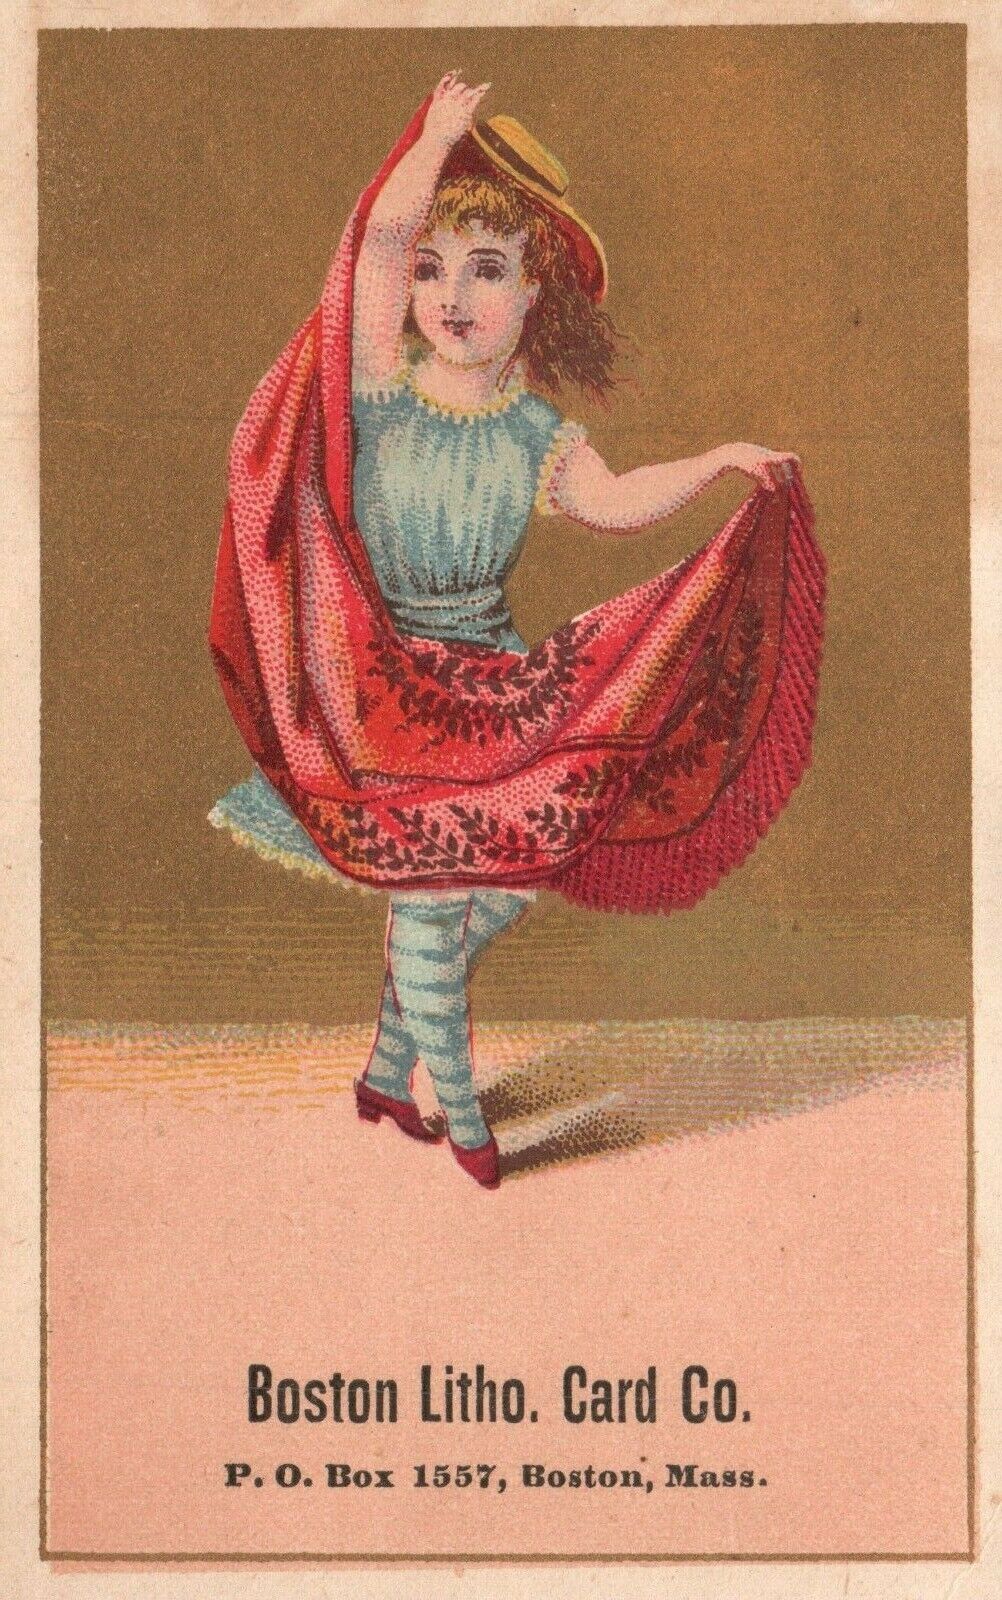 1880s-90s Little Girl Ballerina Boston Litho Card Co. Boston Massachusetts